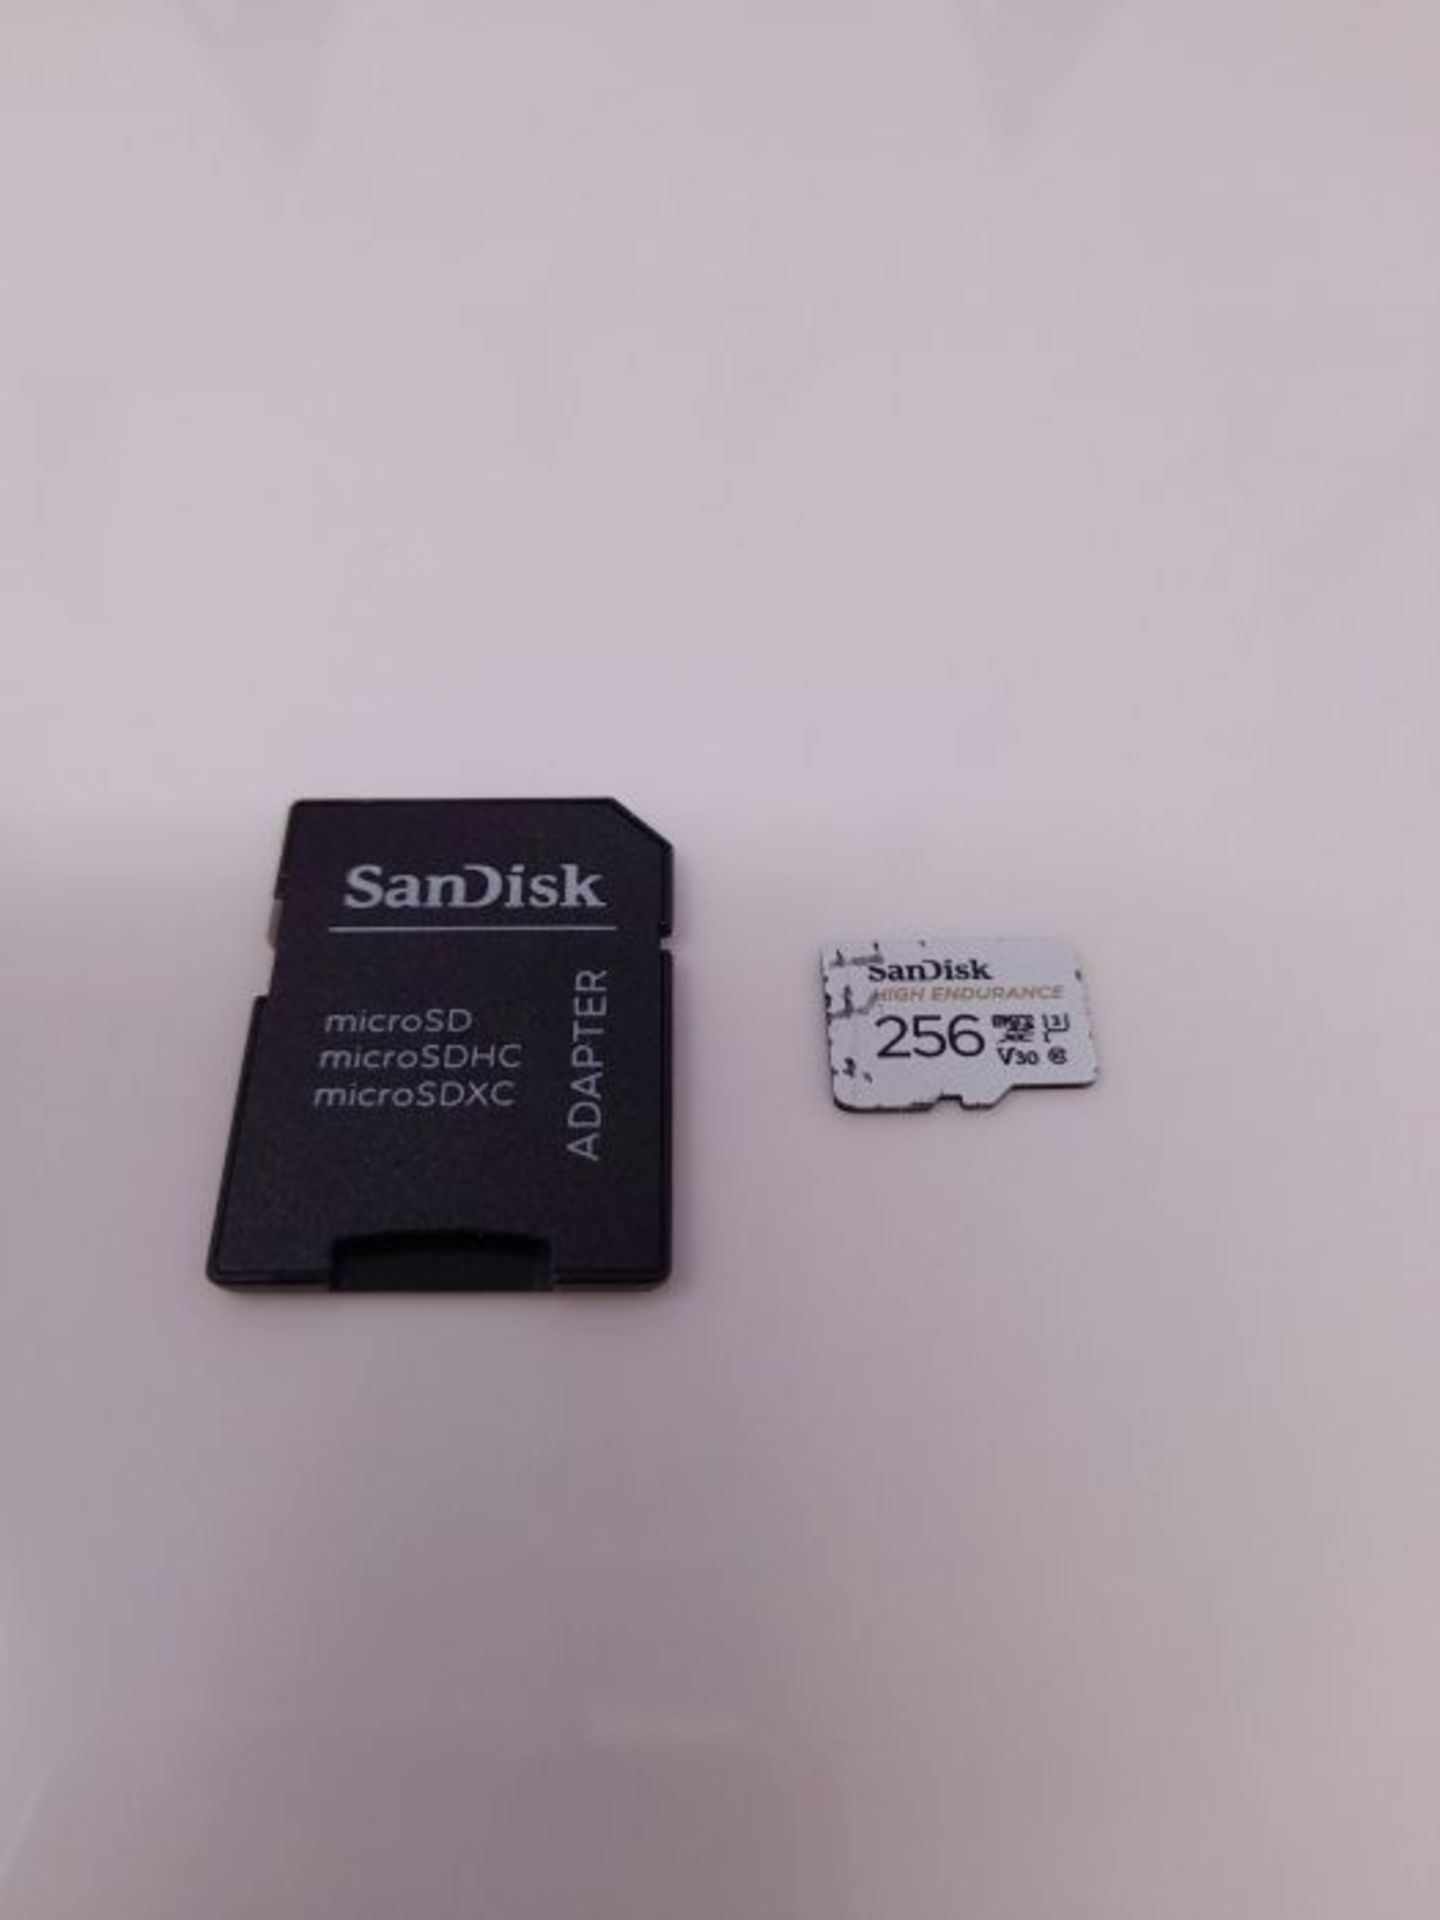 SanDisk HIGH Endurance Scheda microSDXC 256 GB per Videosorveglianza Domestica e Dashc - Image 2 of 2